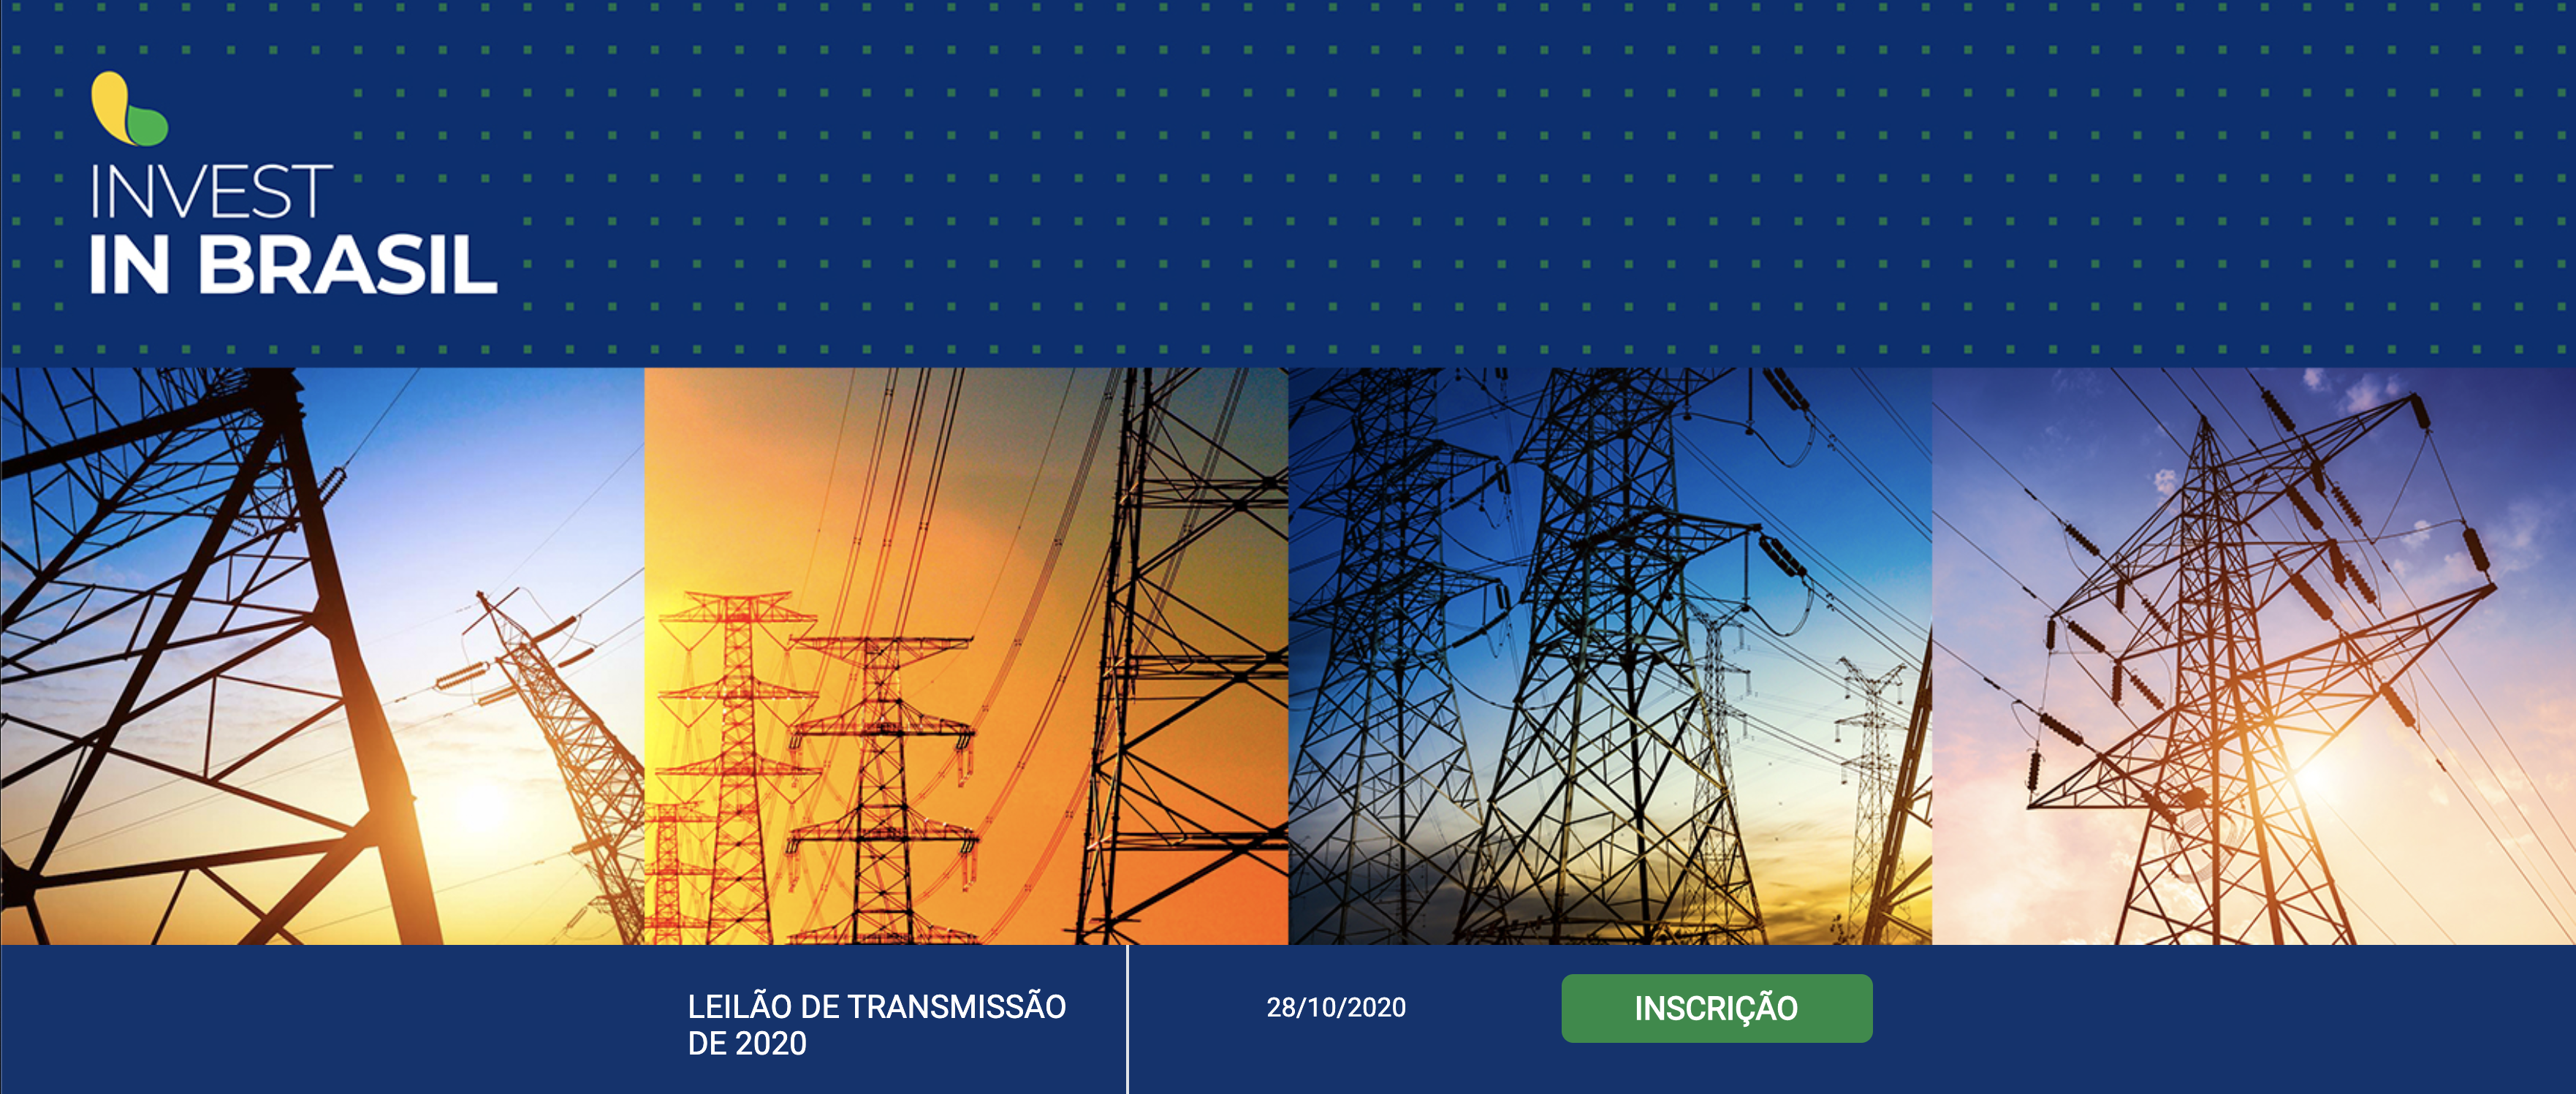 Apex-Brasil e ANEEL realizam evento sobre leilão de transmissão de energia